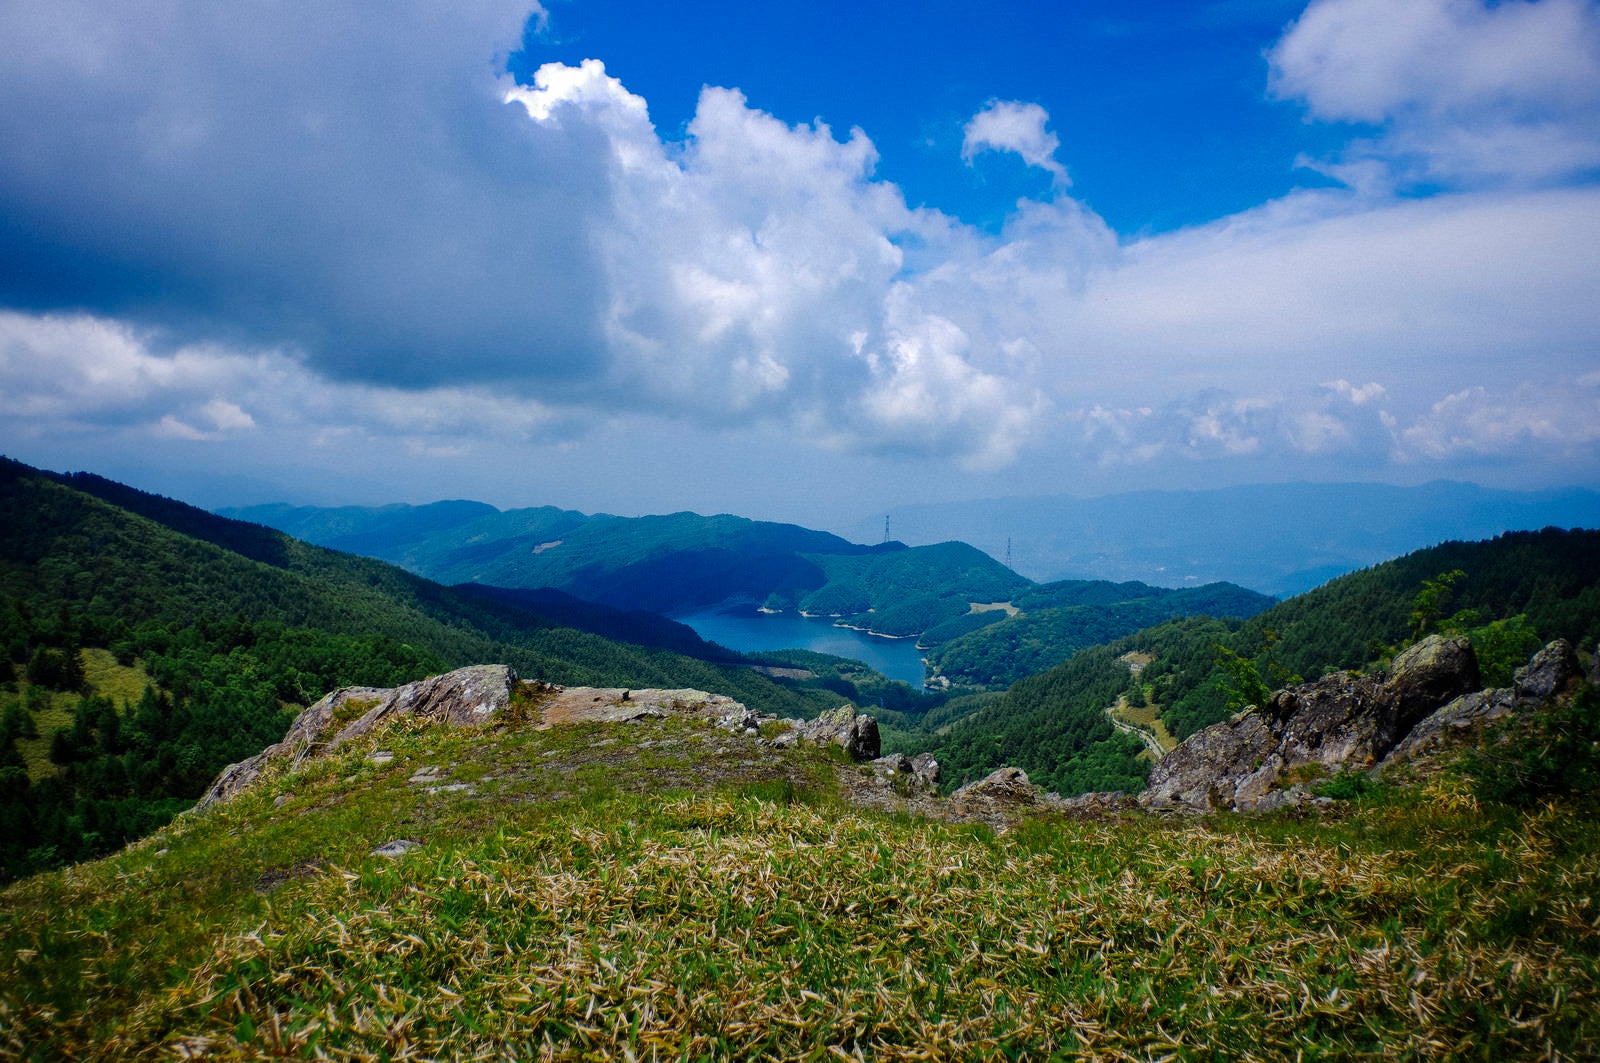 「大菩薩嶺稜線から見る大菩薩湖」の写真